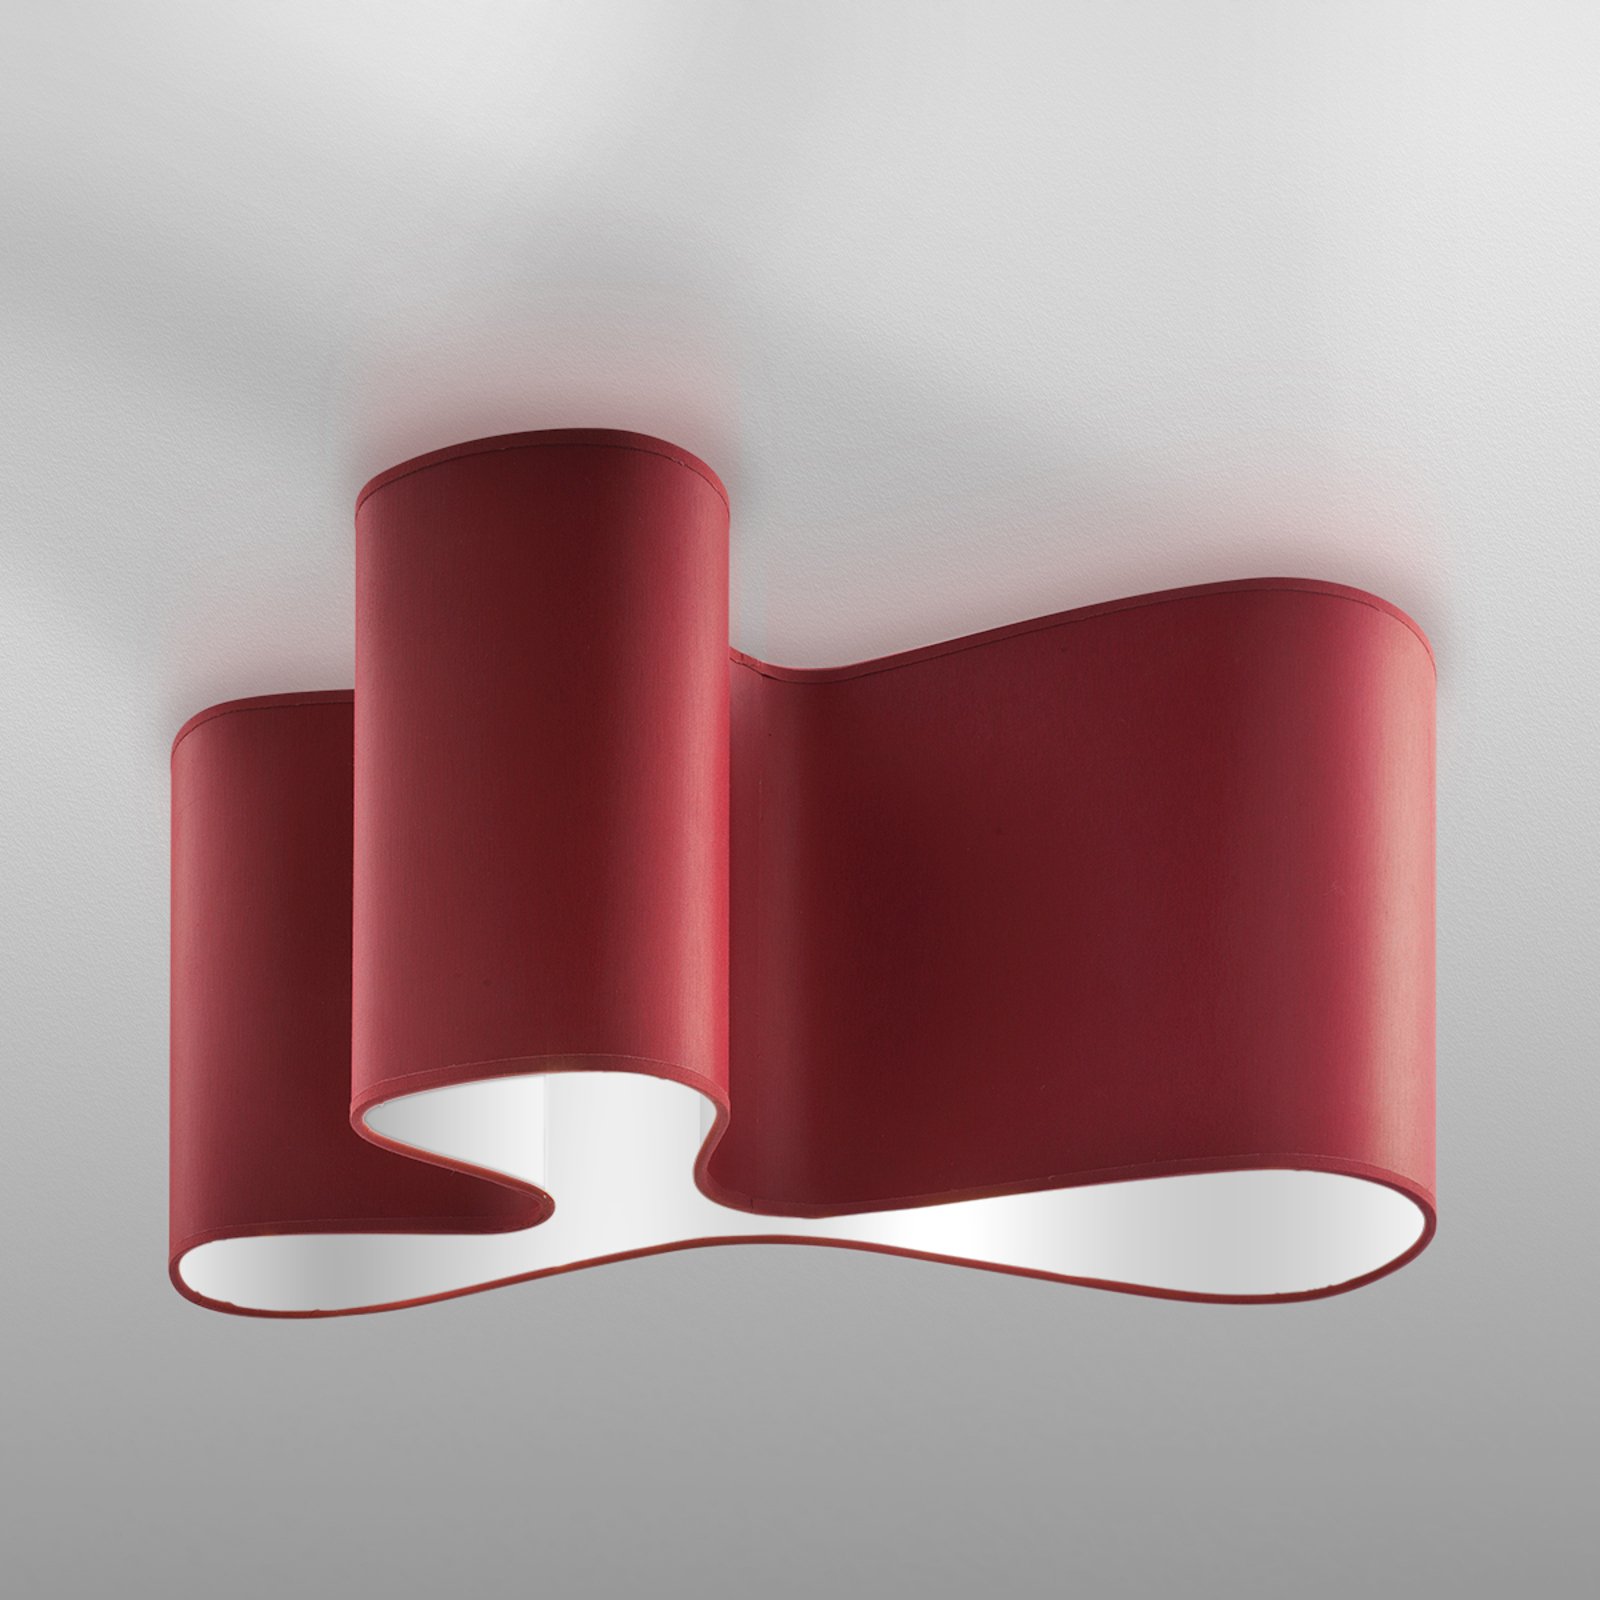 Designer taklampe Mugello rød/hvit